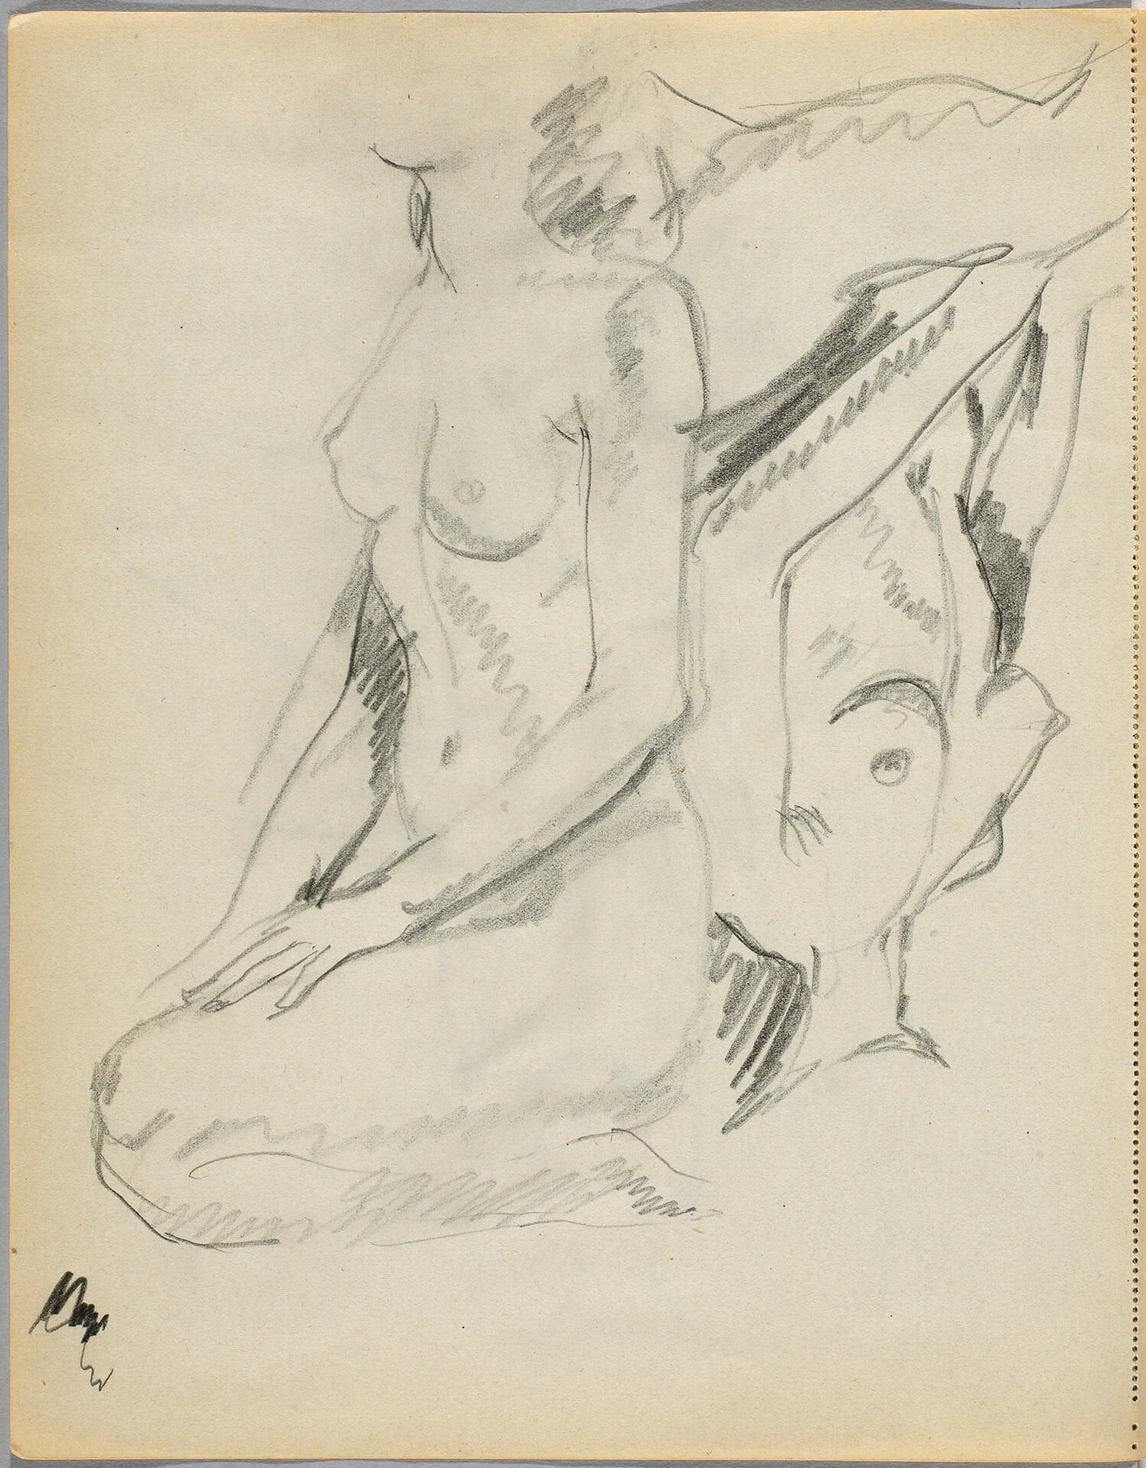 Art Canada Institute, Prudence Heward, Nudes in Sketchbook